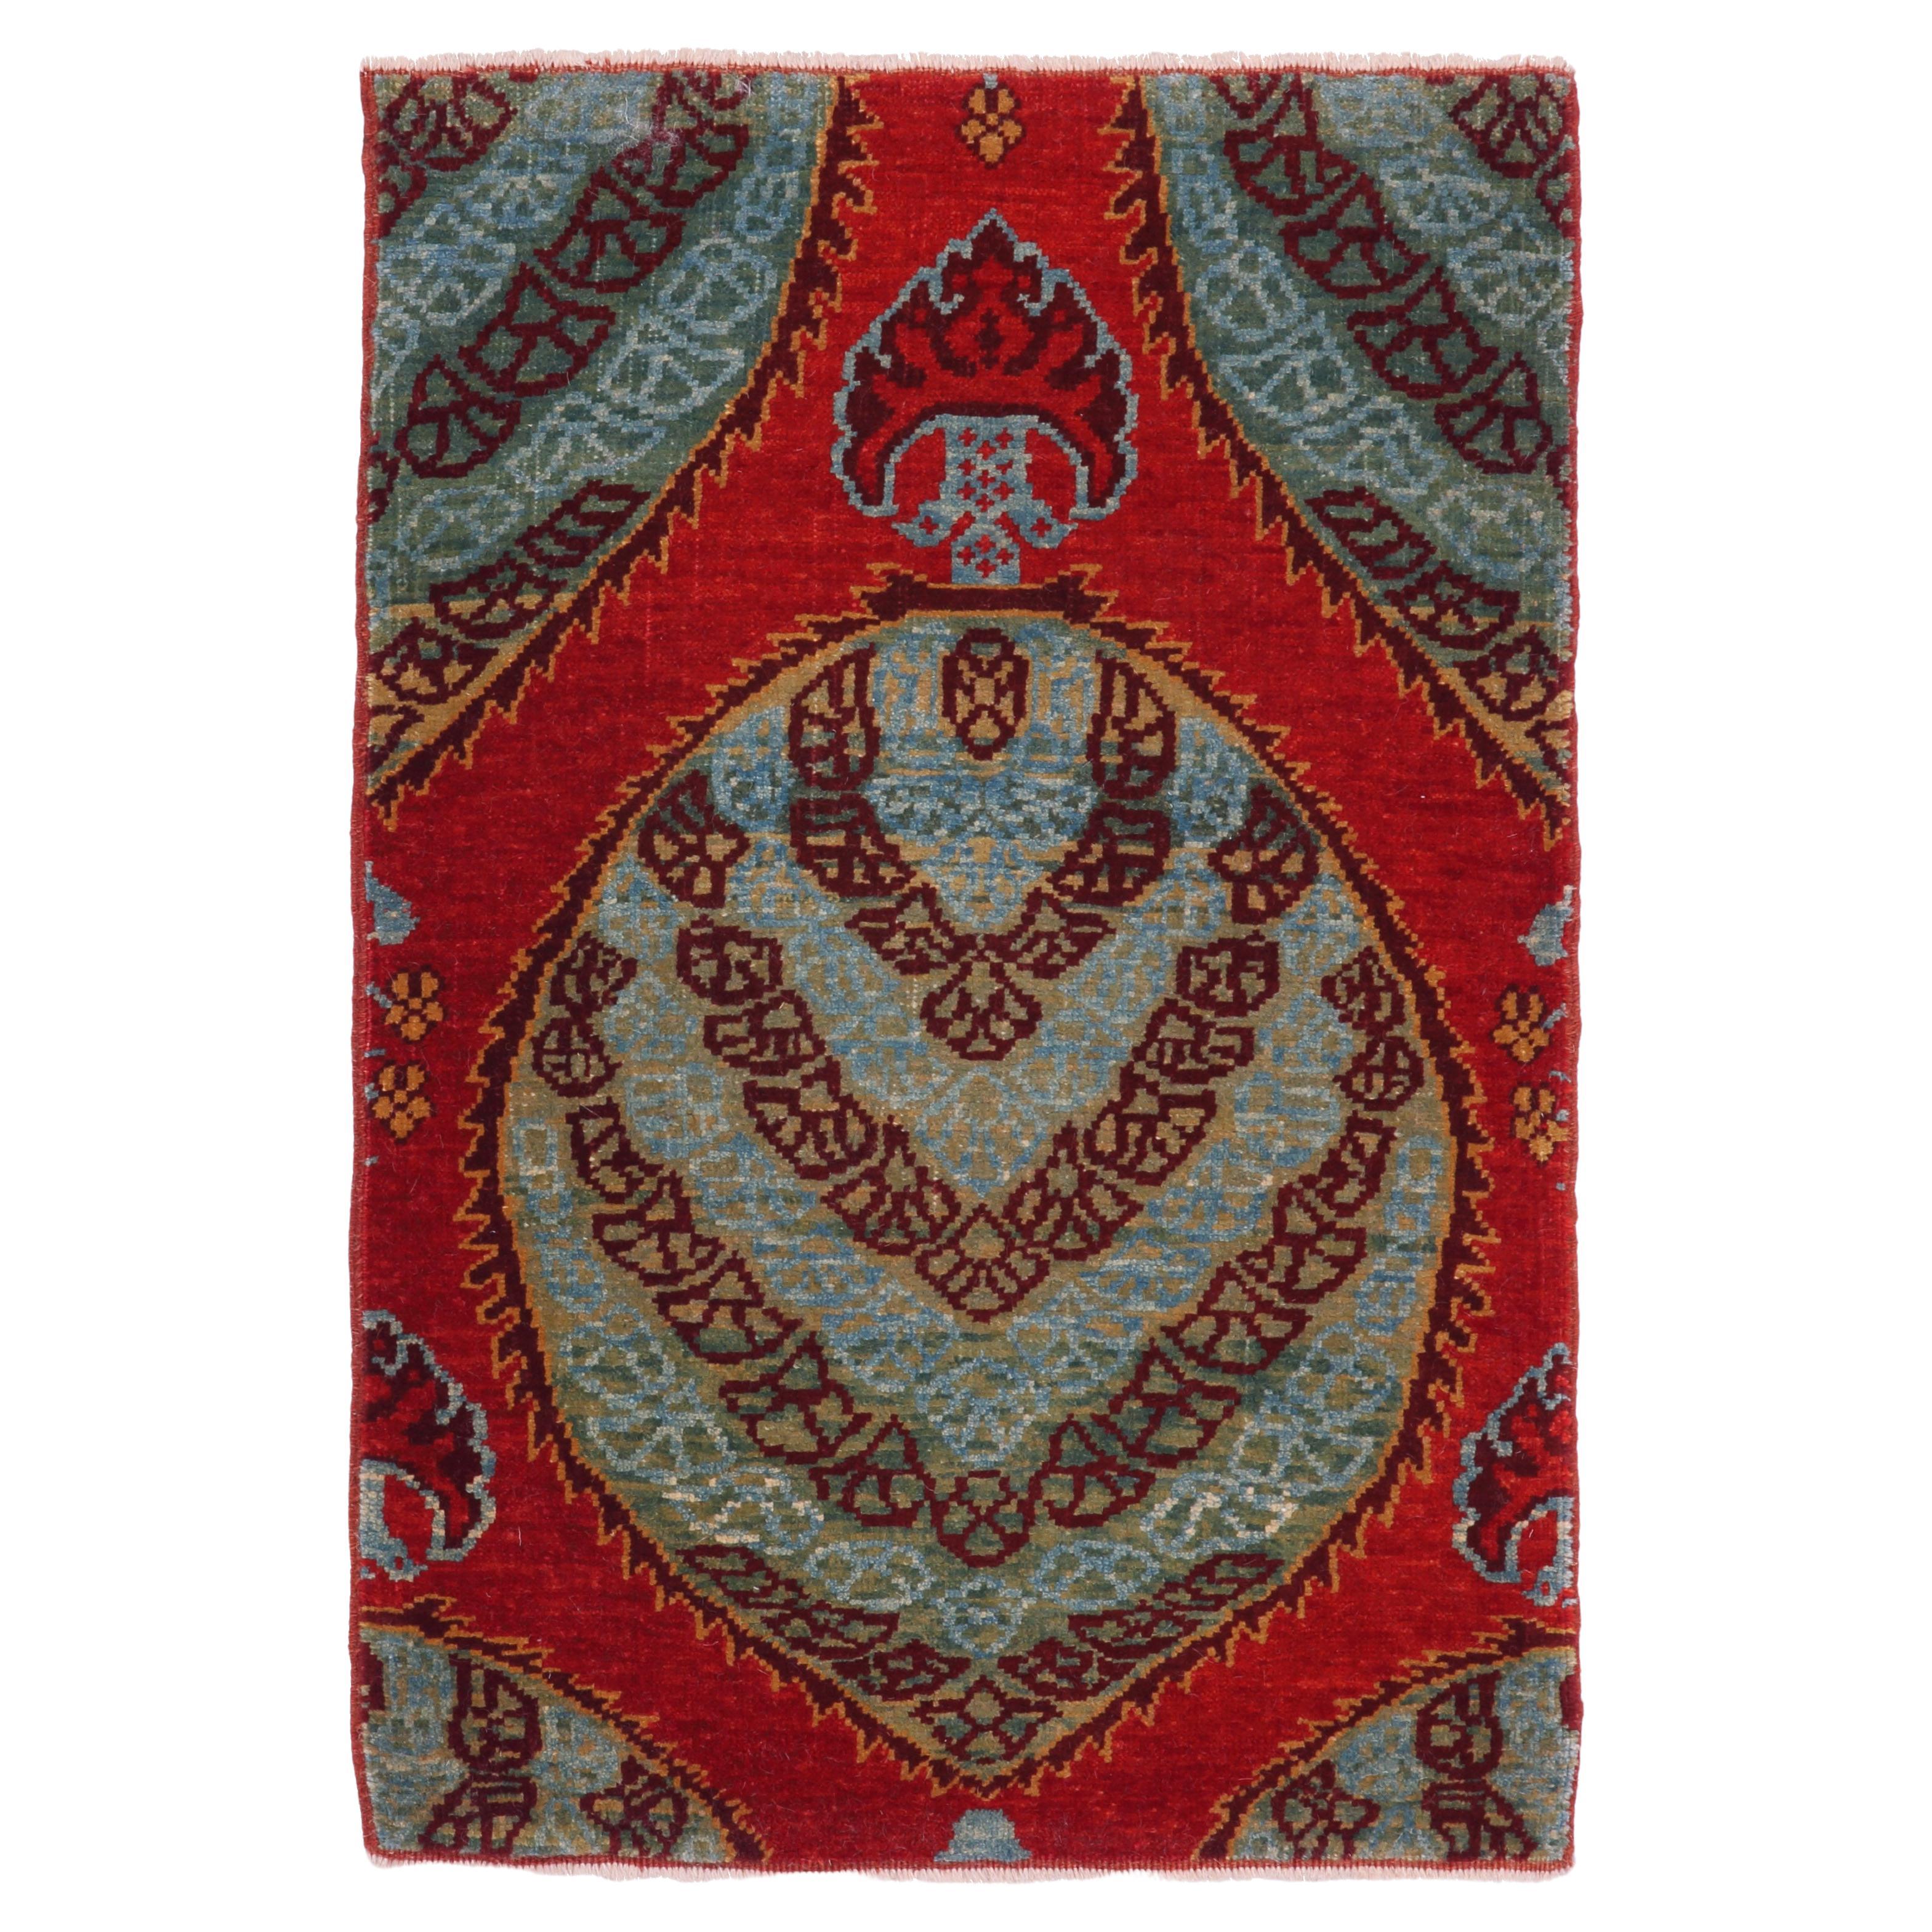 Ararat Rugs Gerous Bidjar Wagireh Pendant Rug Revival Carpet Natural Dyed